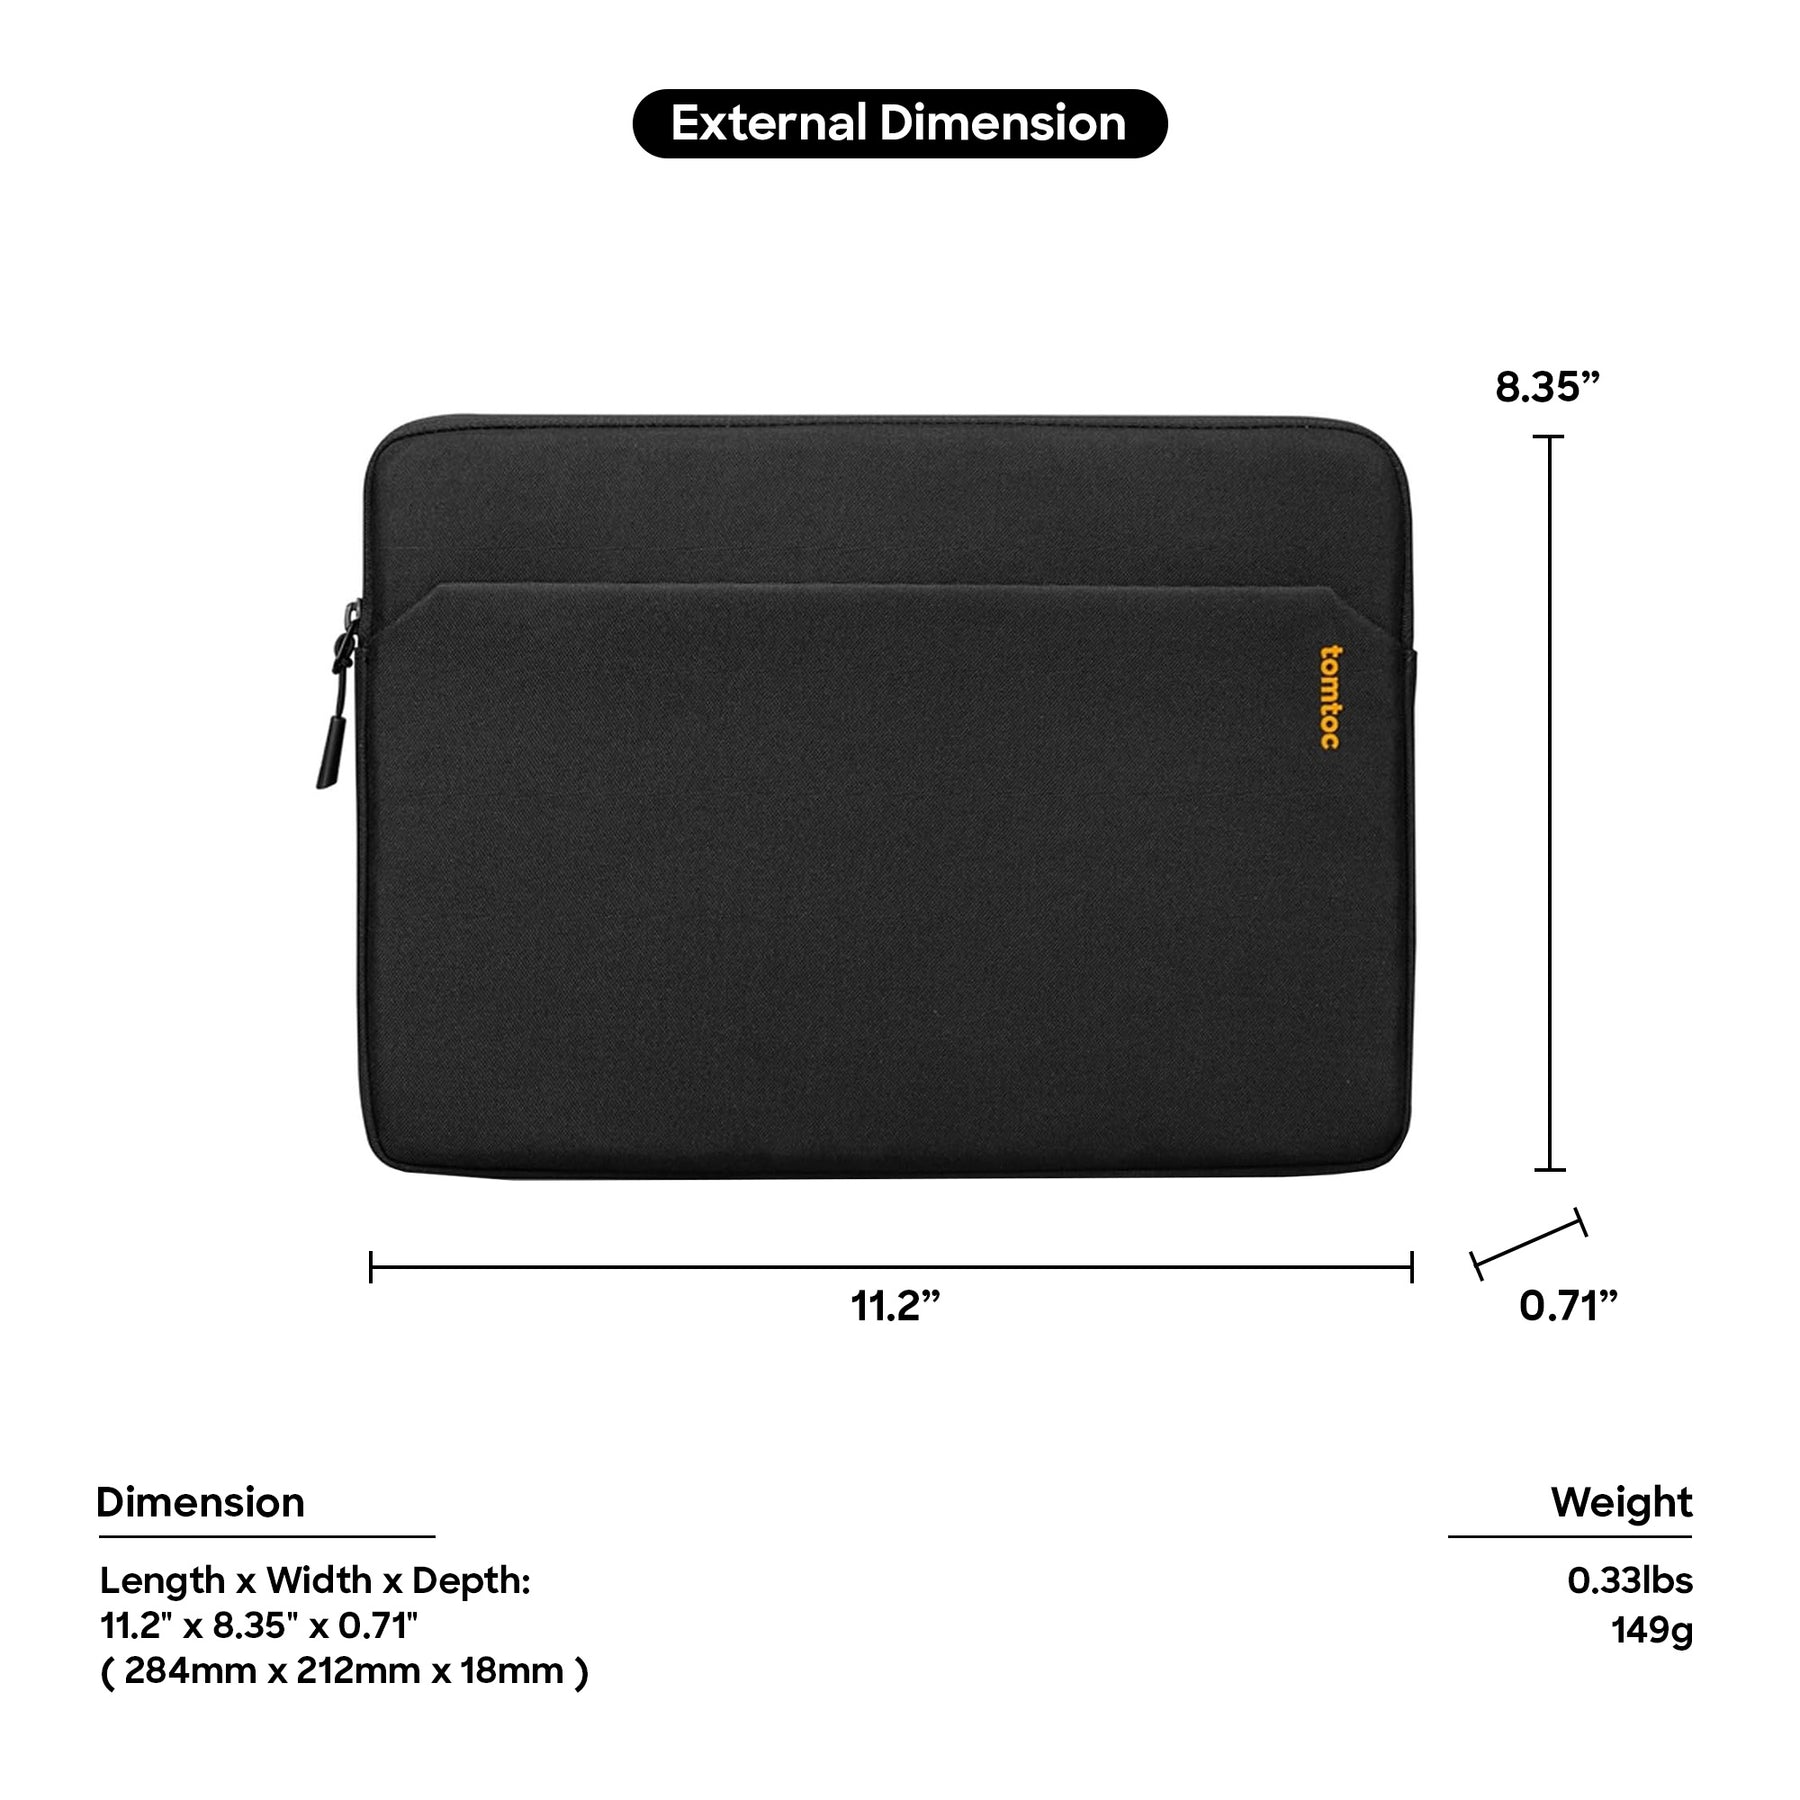 tomtoc 11 Inch Tablet Sleeve Bag - iPad Pro 11 / iPad Air 10.9 / iPad 10.2 - Light Gray